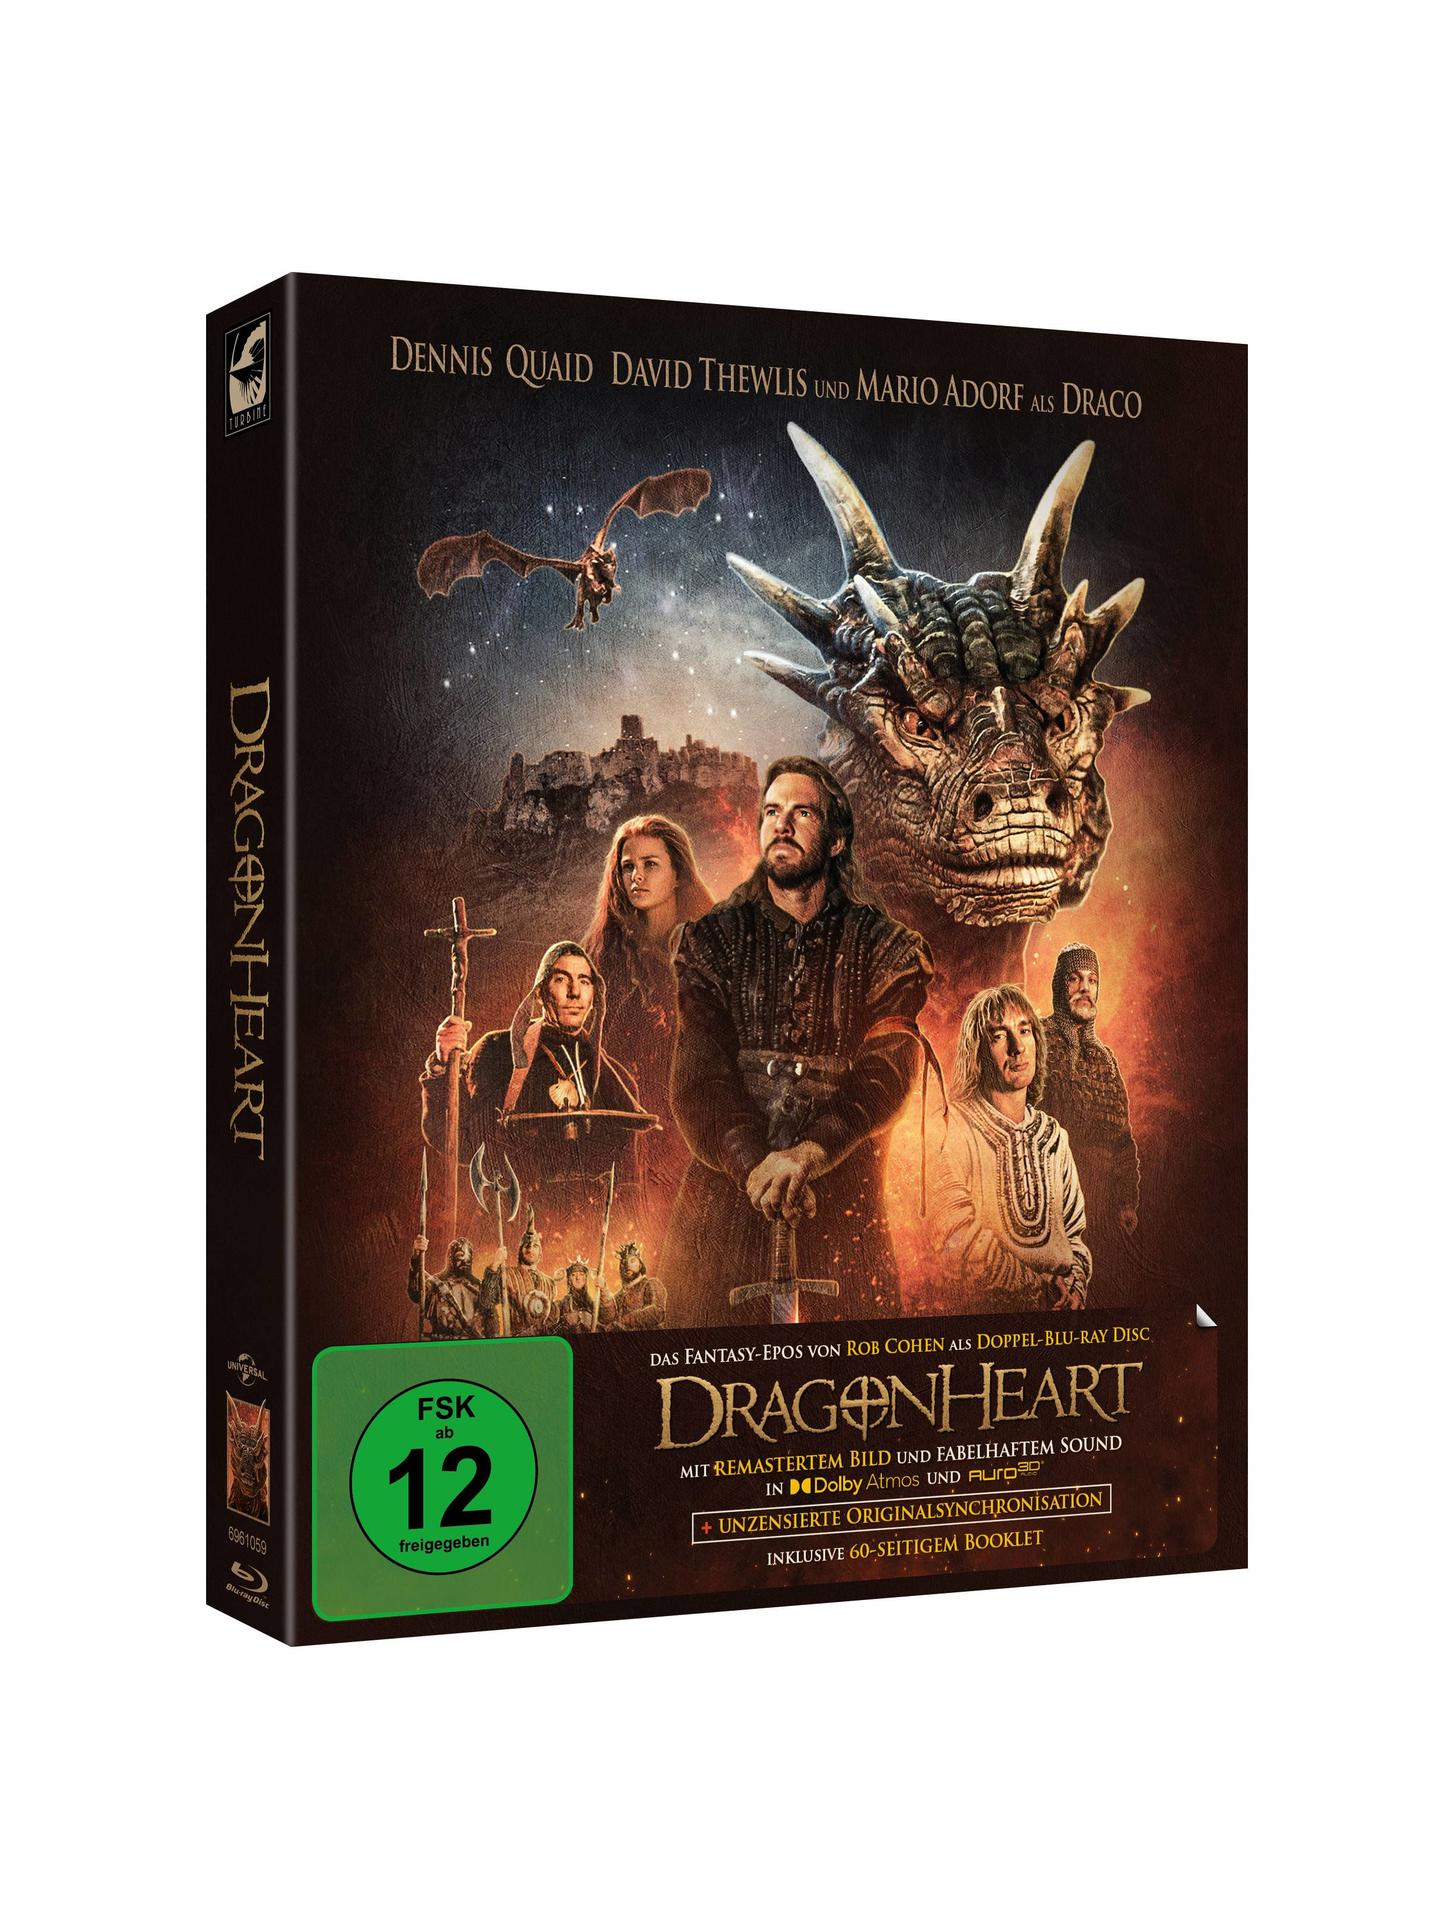 Blu-ray Dragonheart